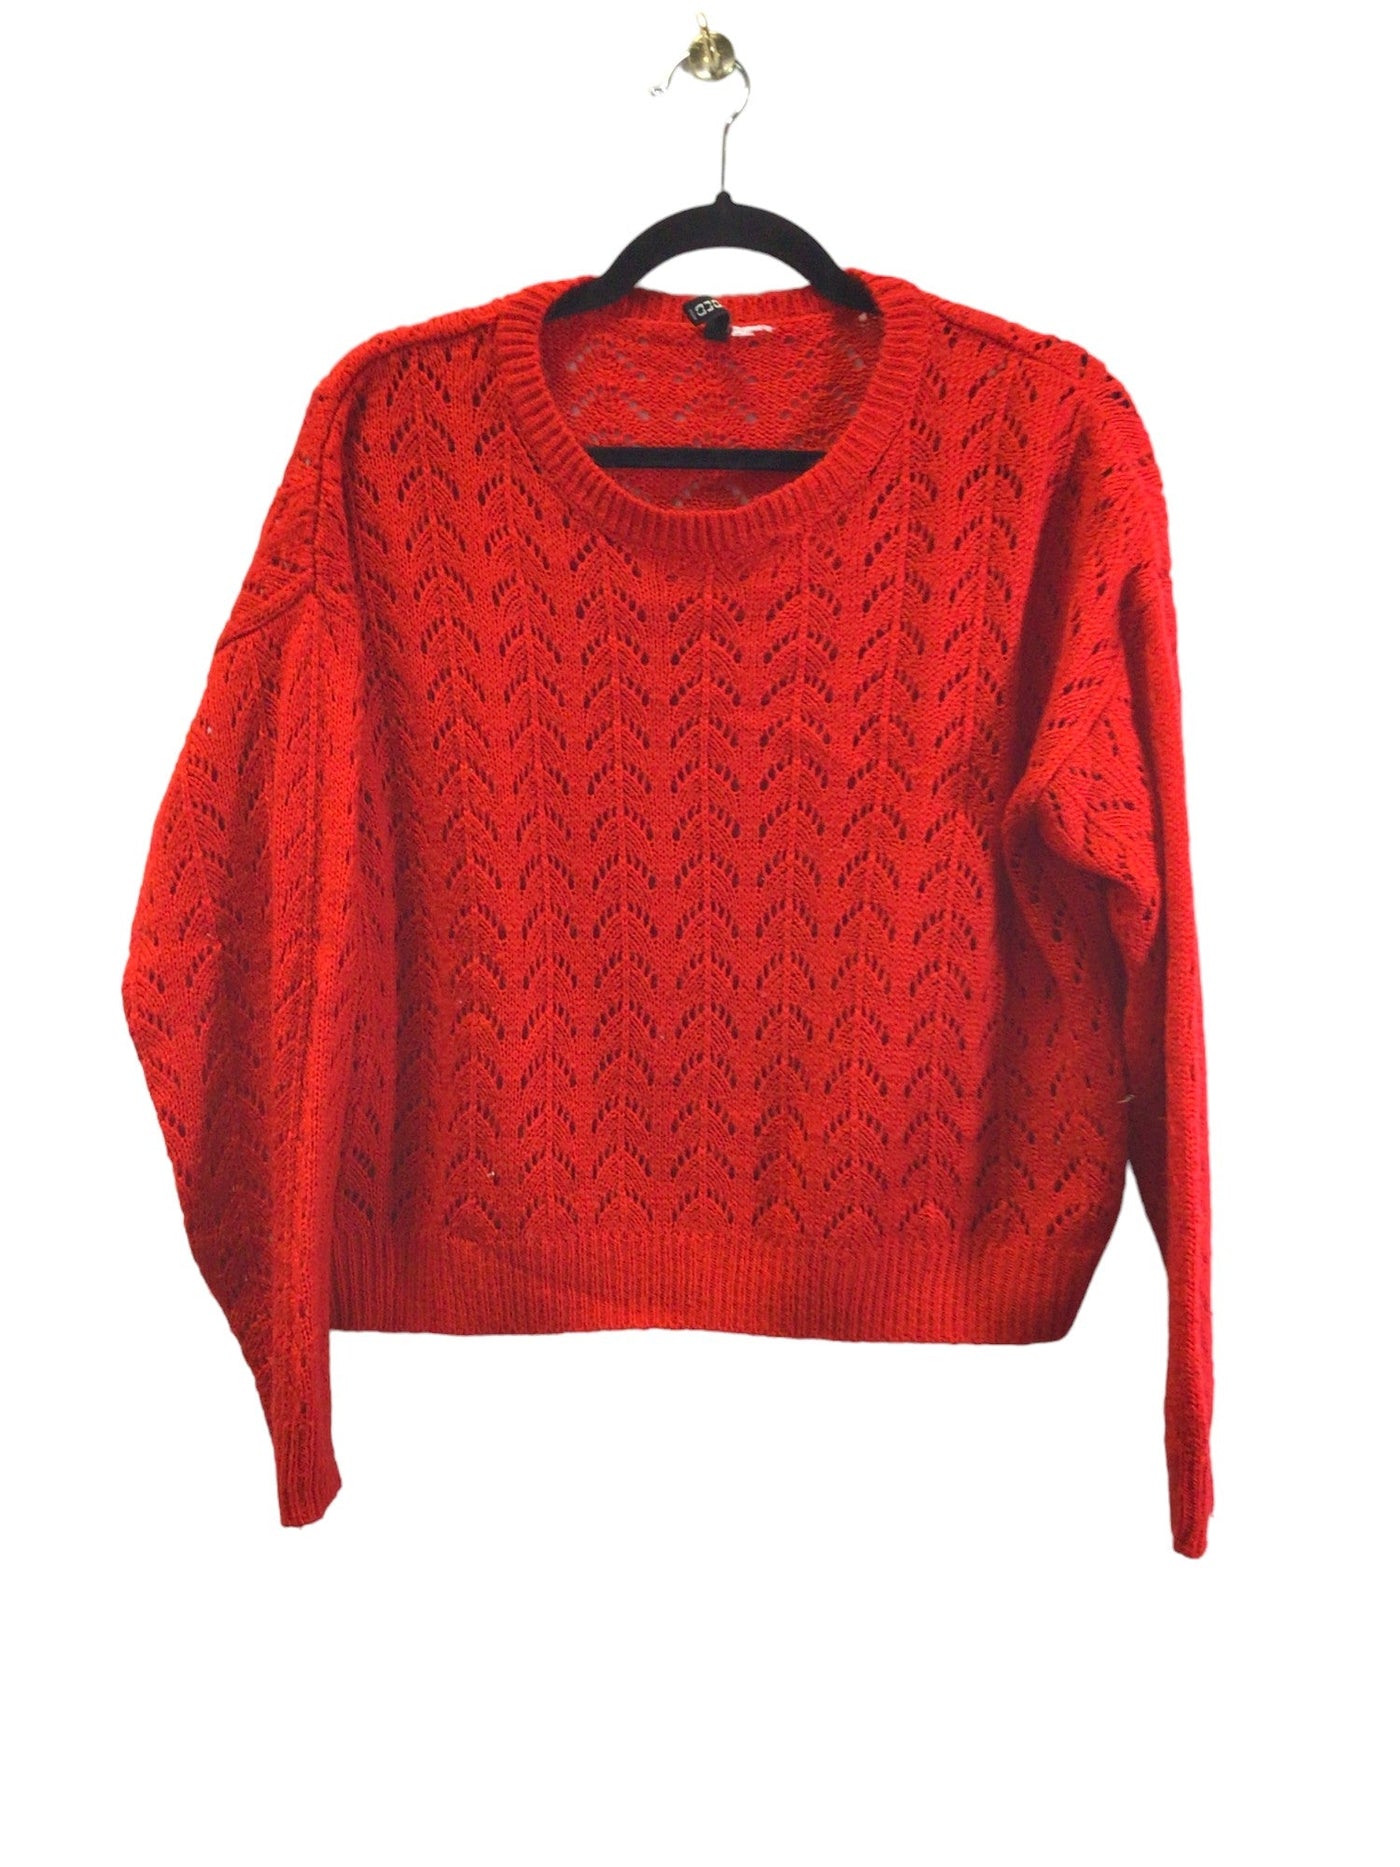 H&M Women Sweaters Regular fit in Red - Size L | 7.99 $ KOOP